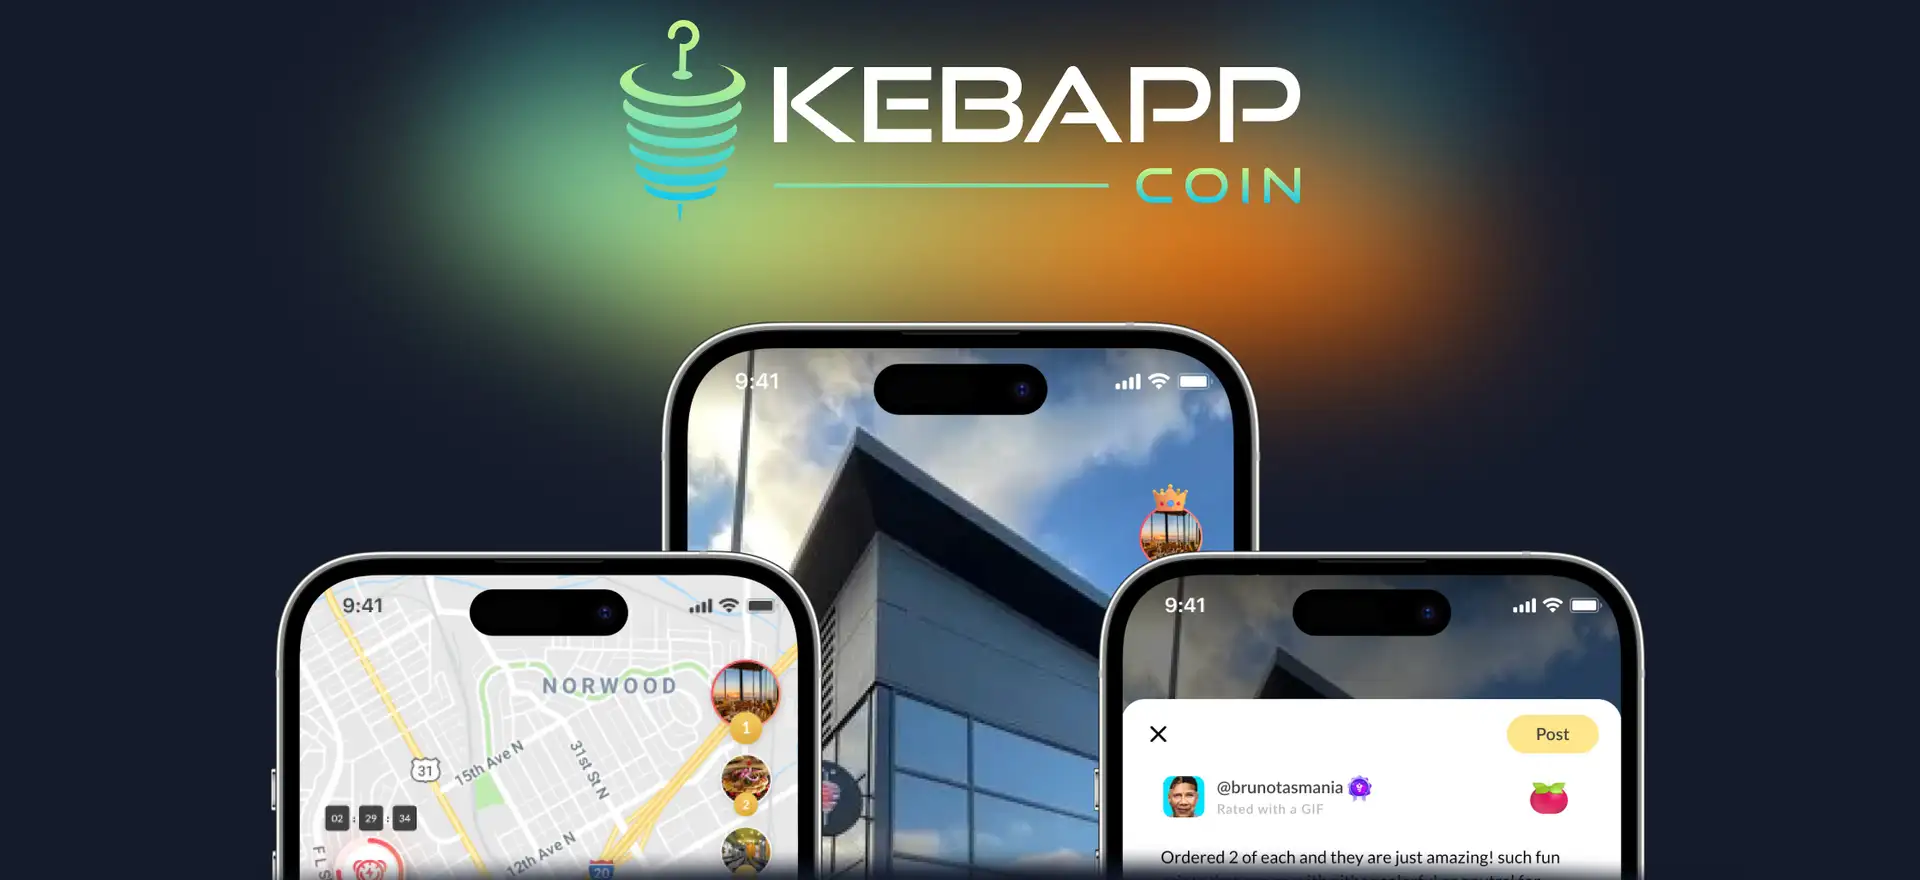 KebApp Review